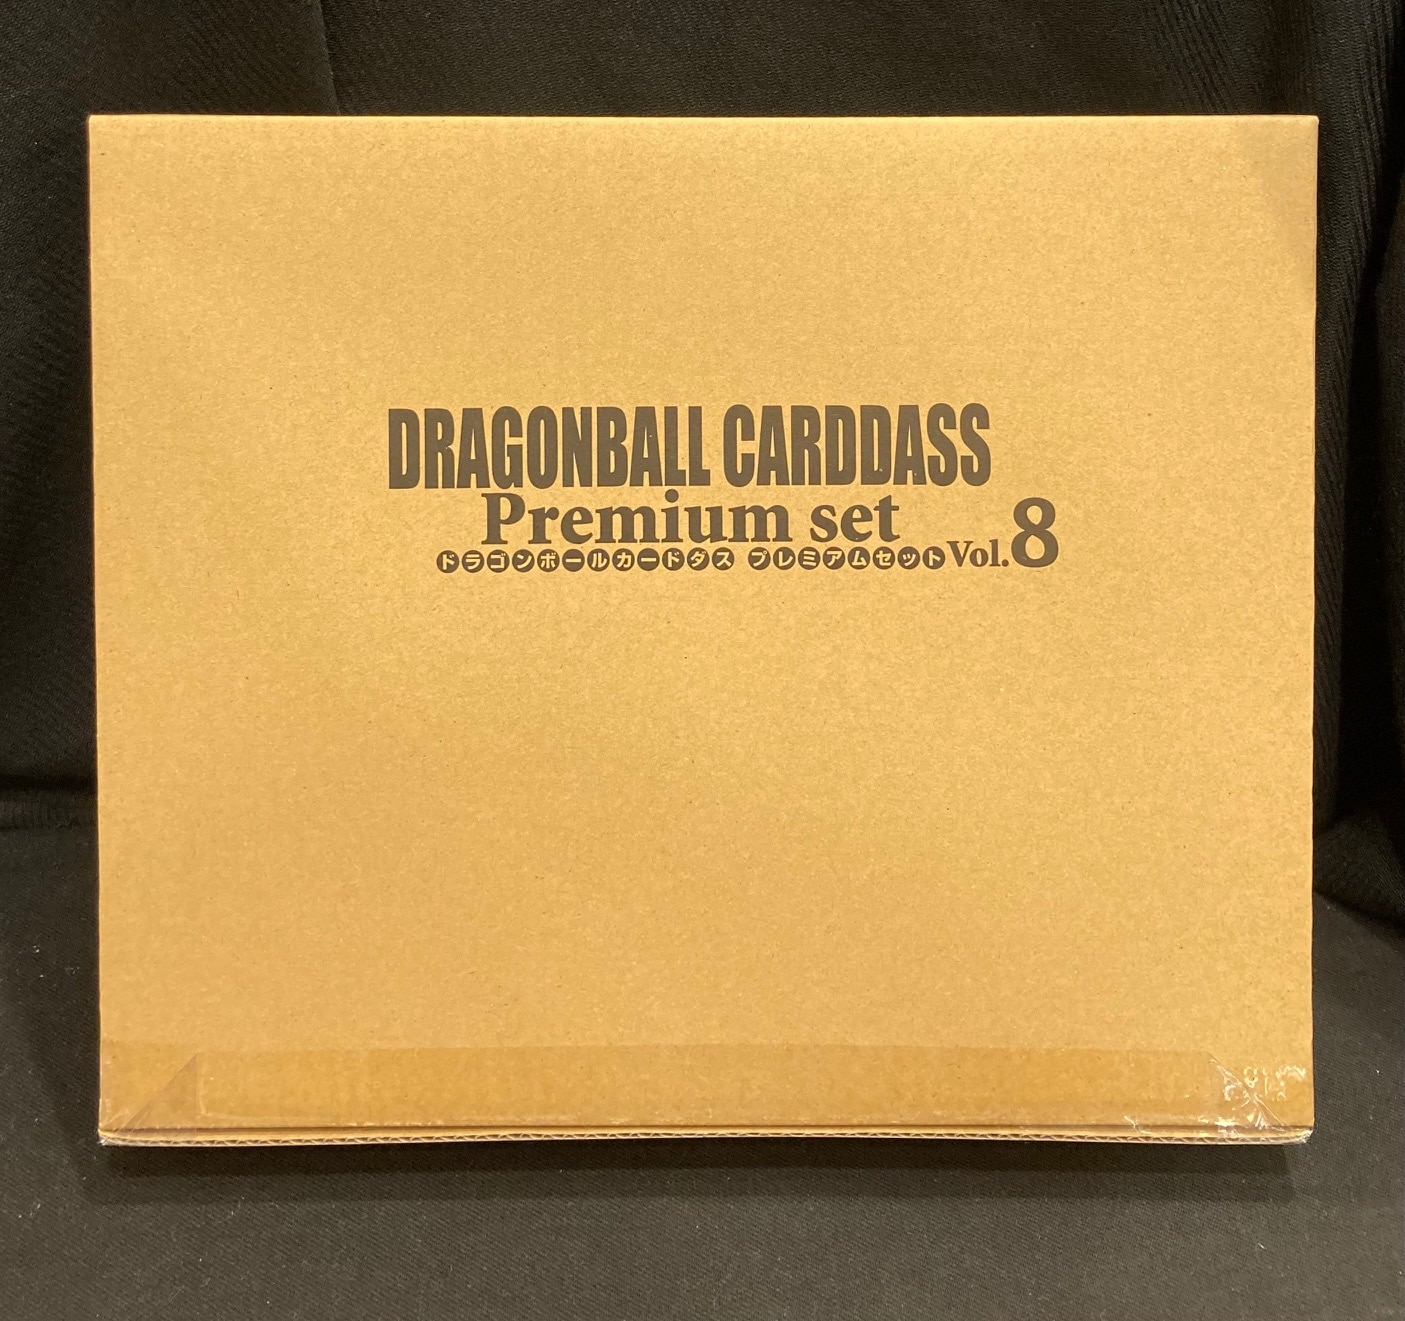 ドラゴンボールカードダス Premium set Vol.8 - トレーディングカード